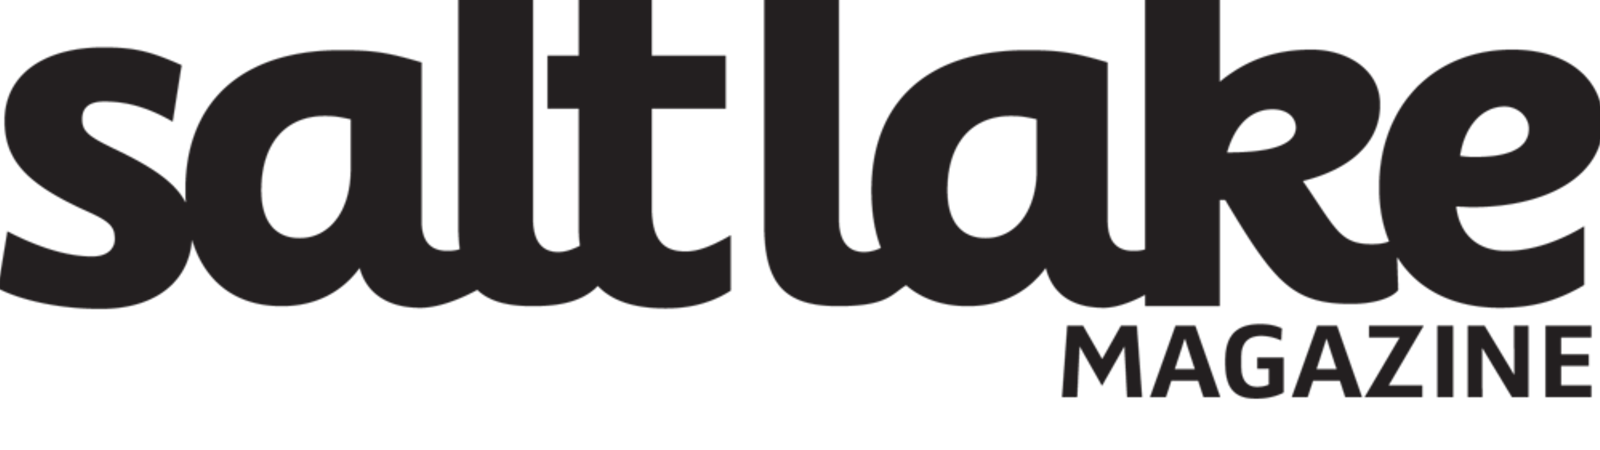 Salt Lake magazine logo.png